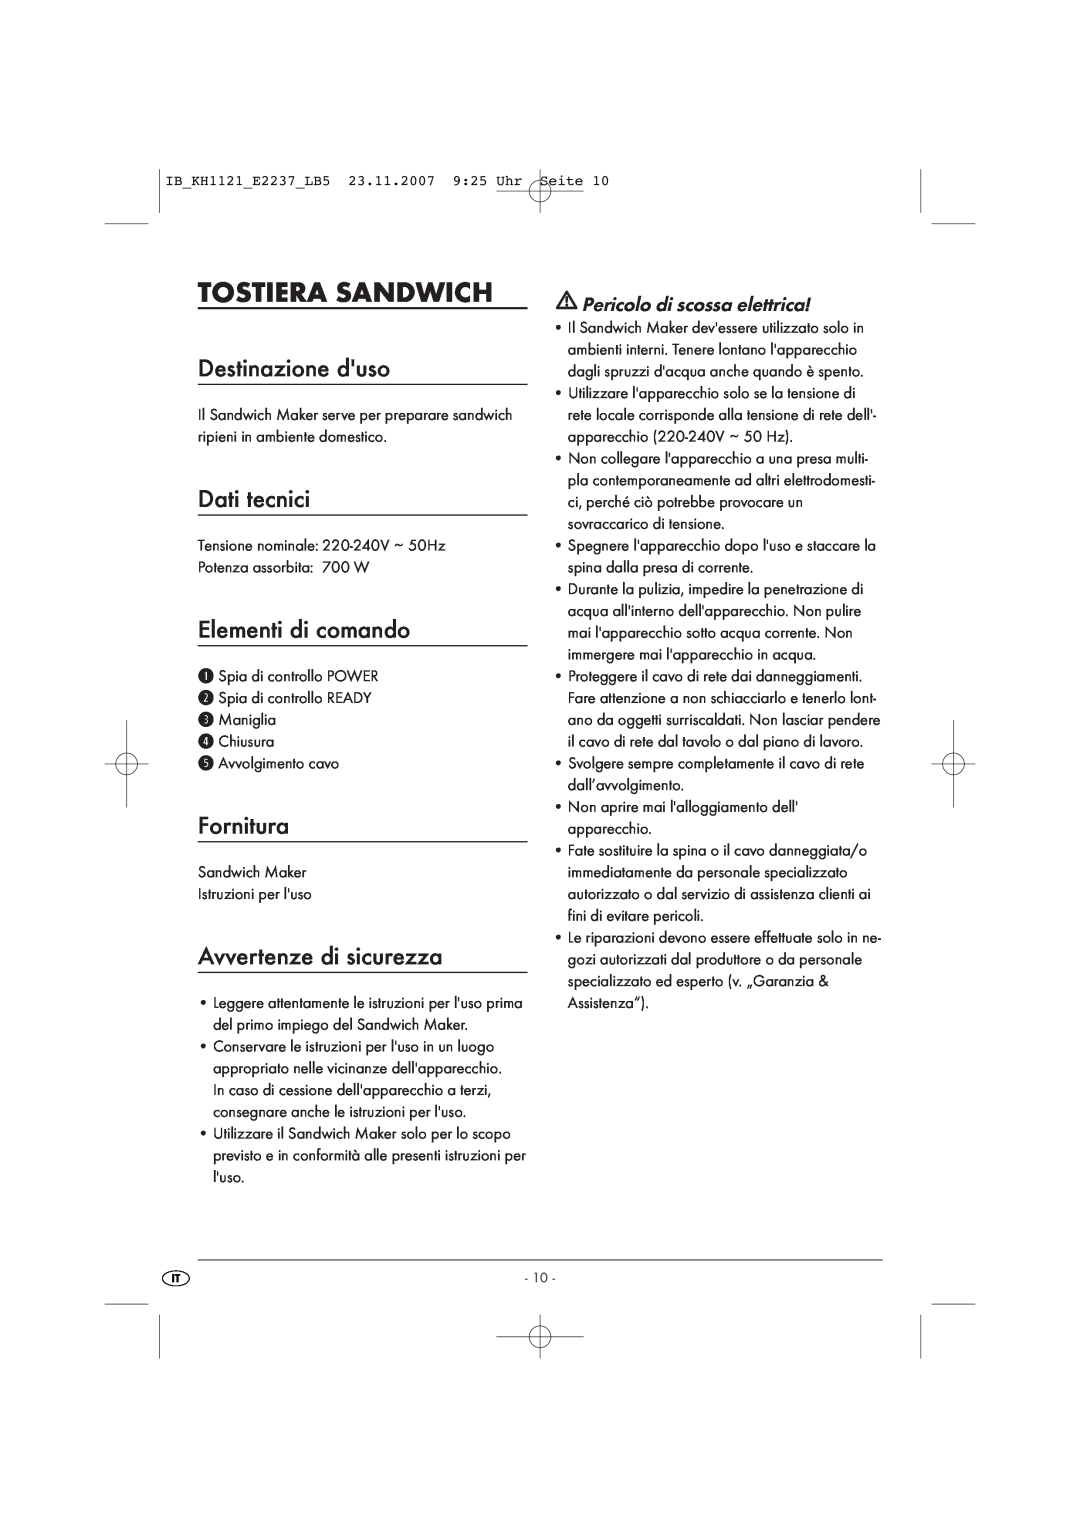 Kompernass KH 1121 manual Tostiera Sandwich, Destinazione duso, Dati tecnici, Elementi di comando, Fornitura 